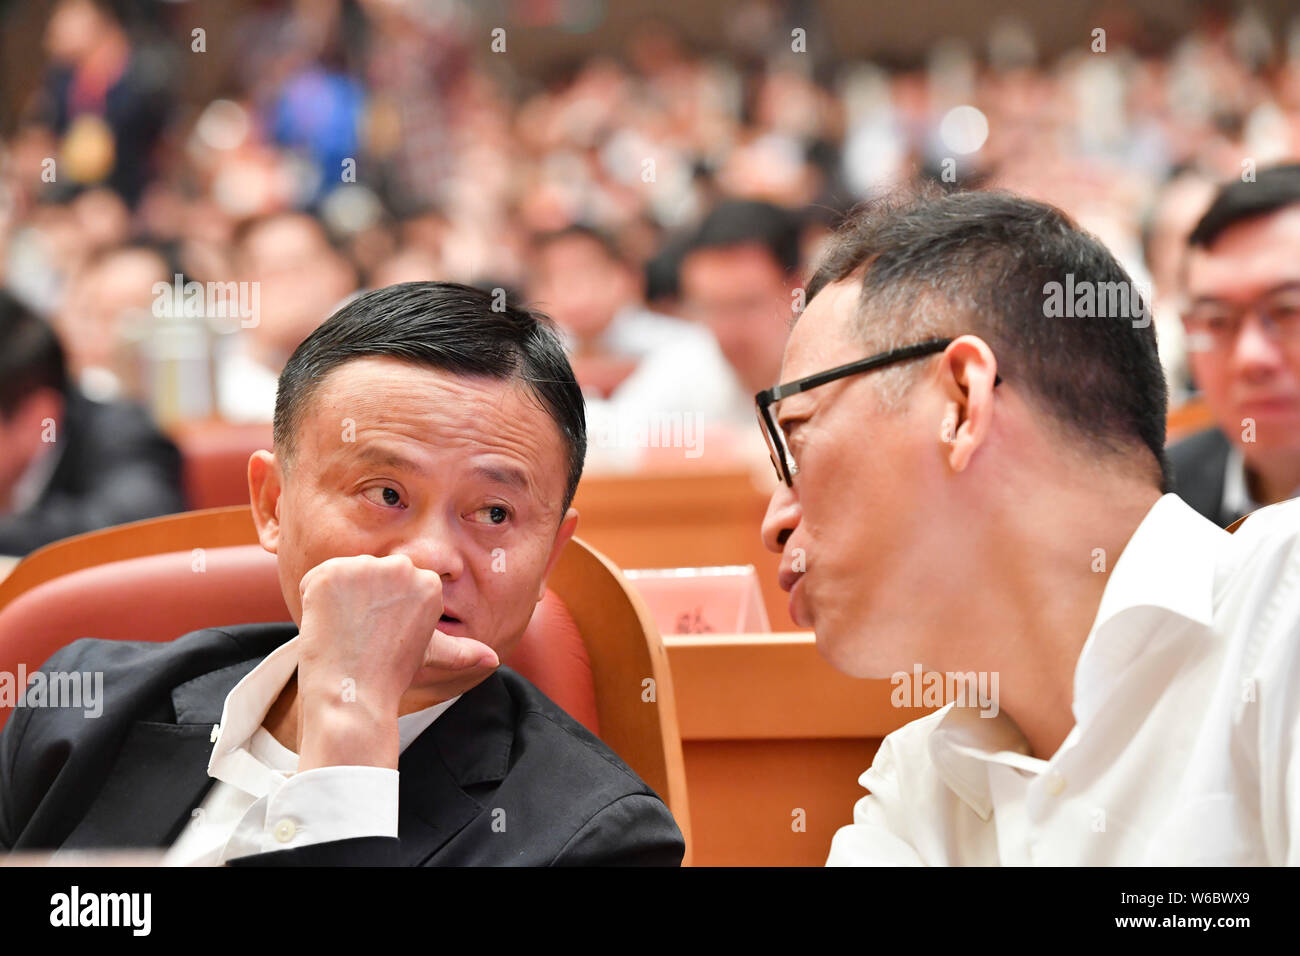 Jack Ma ou Ma Yun, président du géant de l'e-commerce chinois Alibaba Group, prononce un discours à la Conférence d'ouverture de Zhejiang à Hangzhou city, à l'Est Banque D'Images